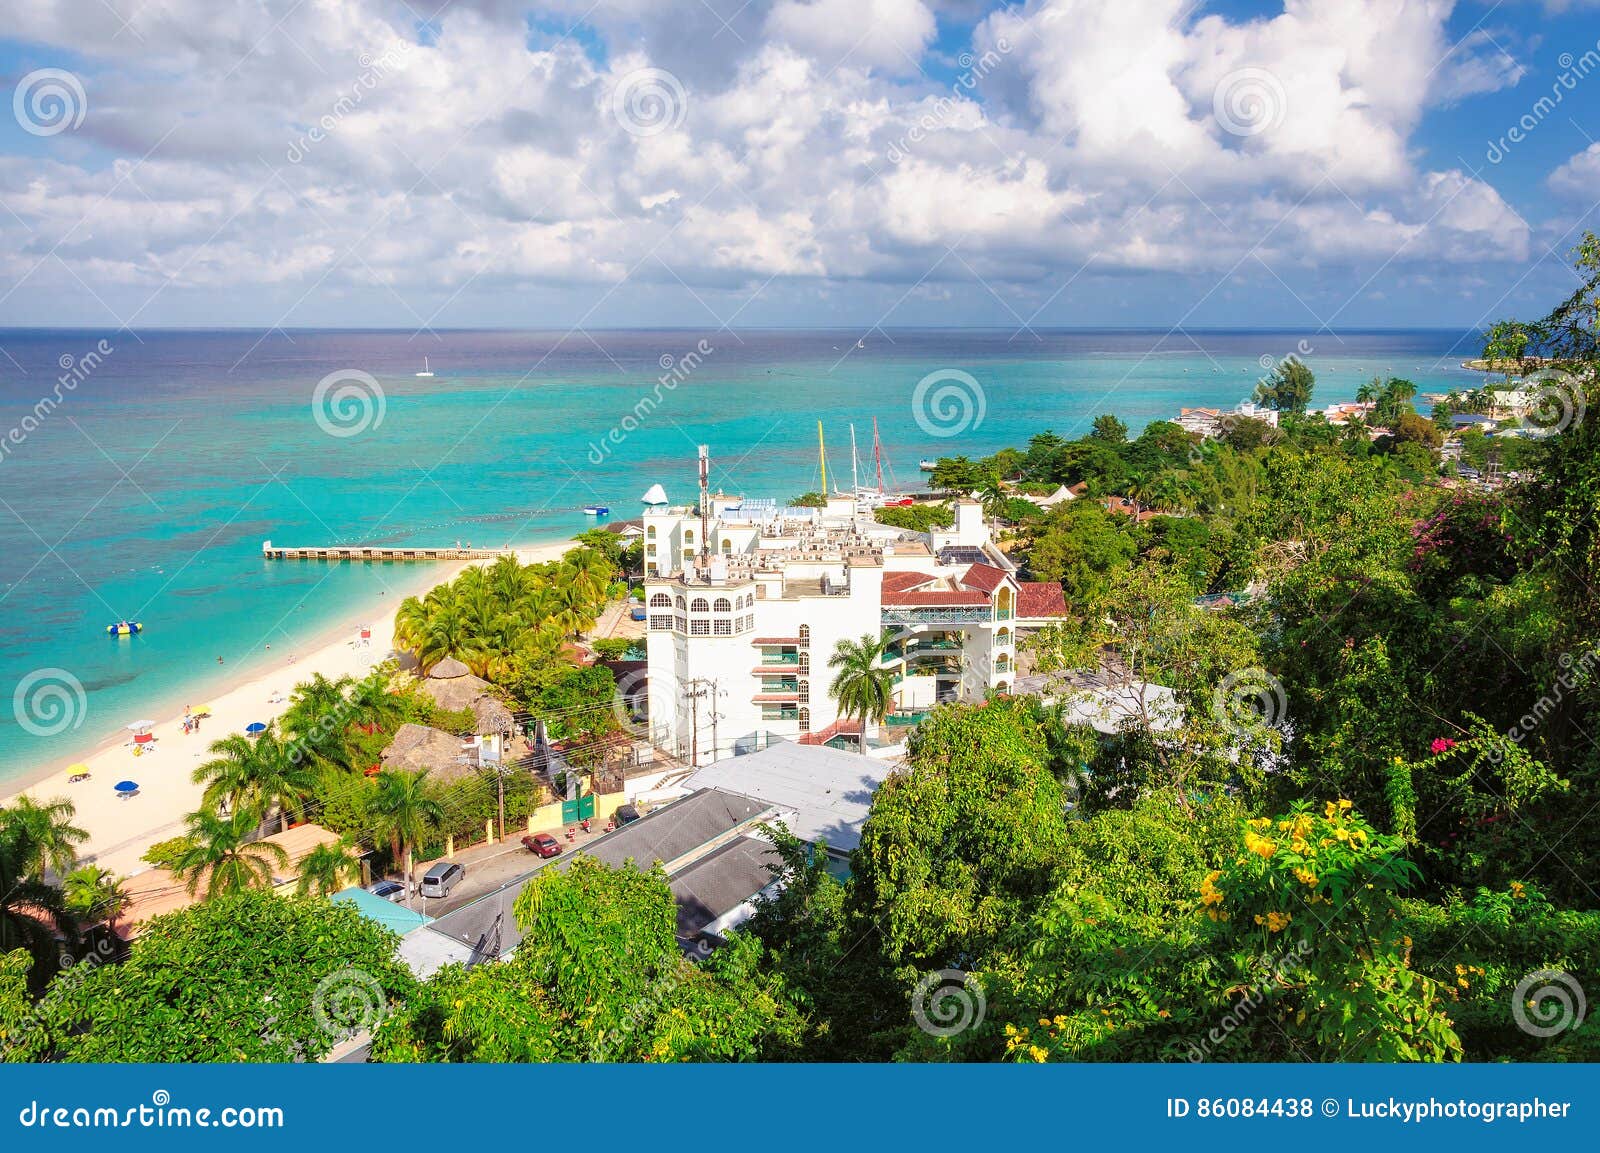 jamaica beach, montego bay